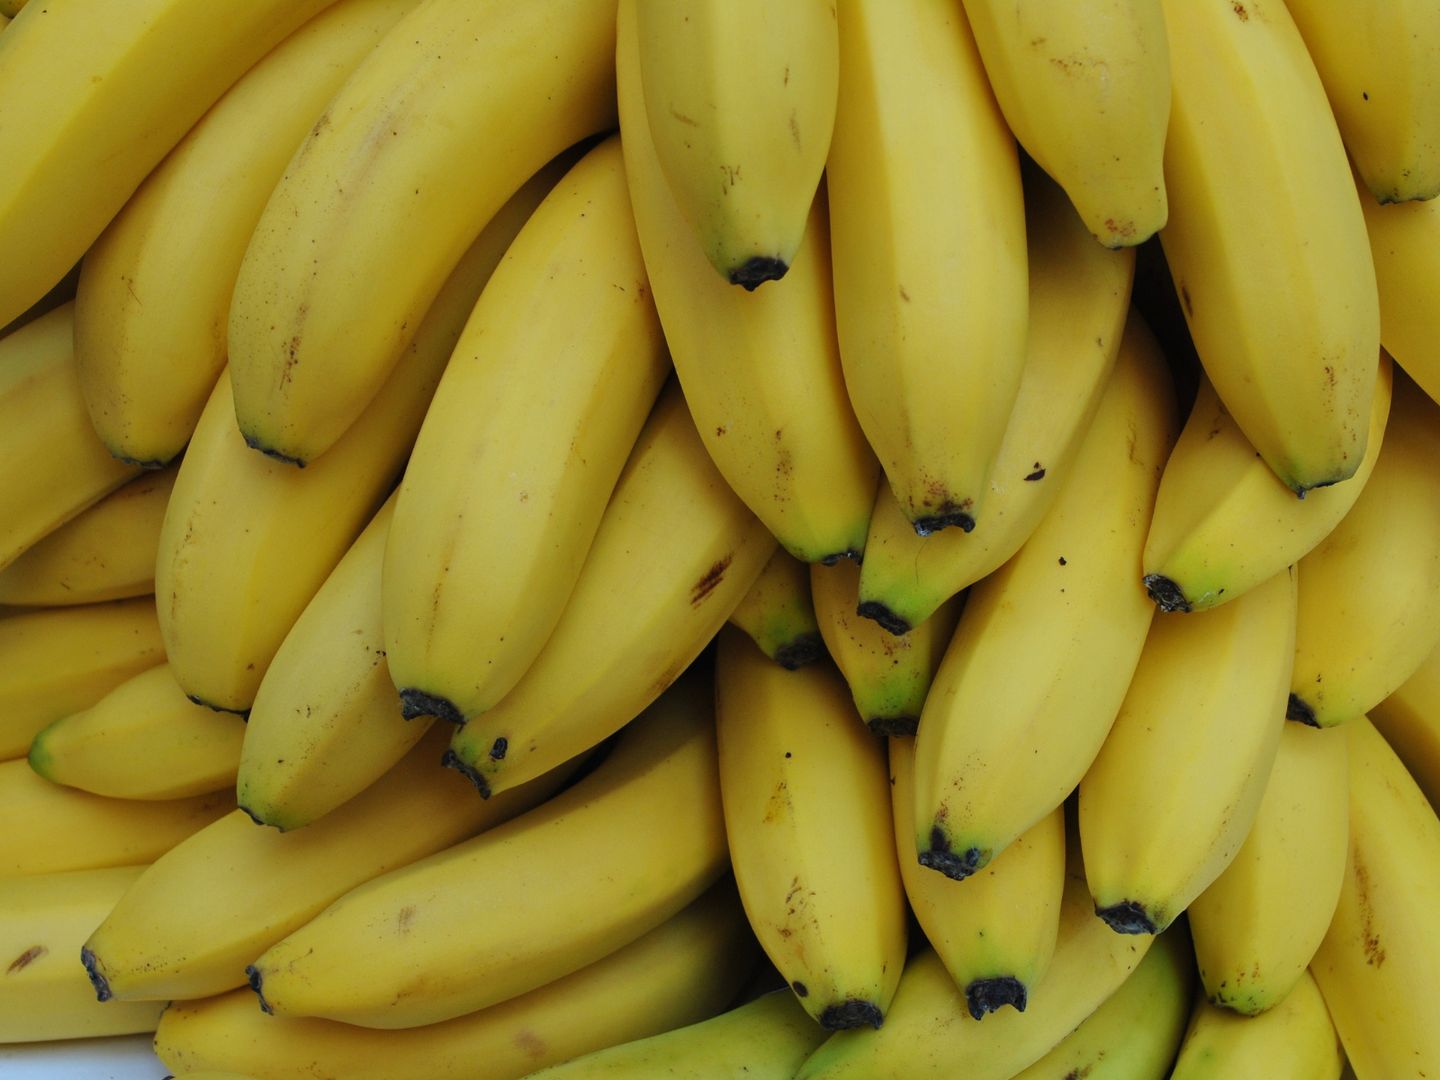 Takie banany są najzdrowsze. Niektórzy muszą na nie bardzo uważać